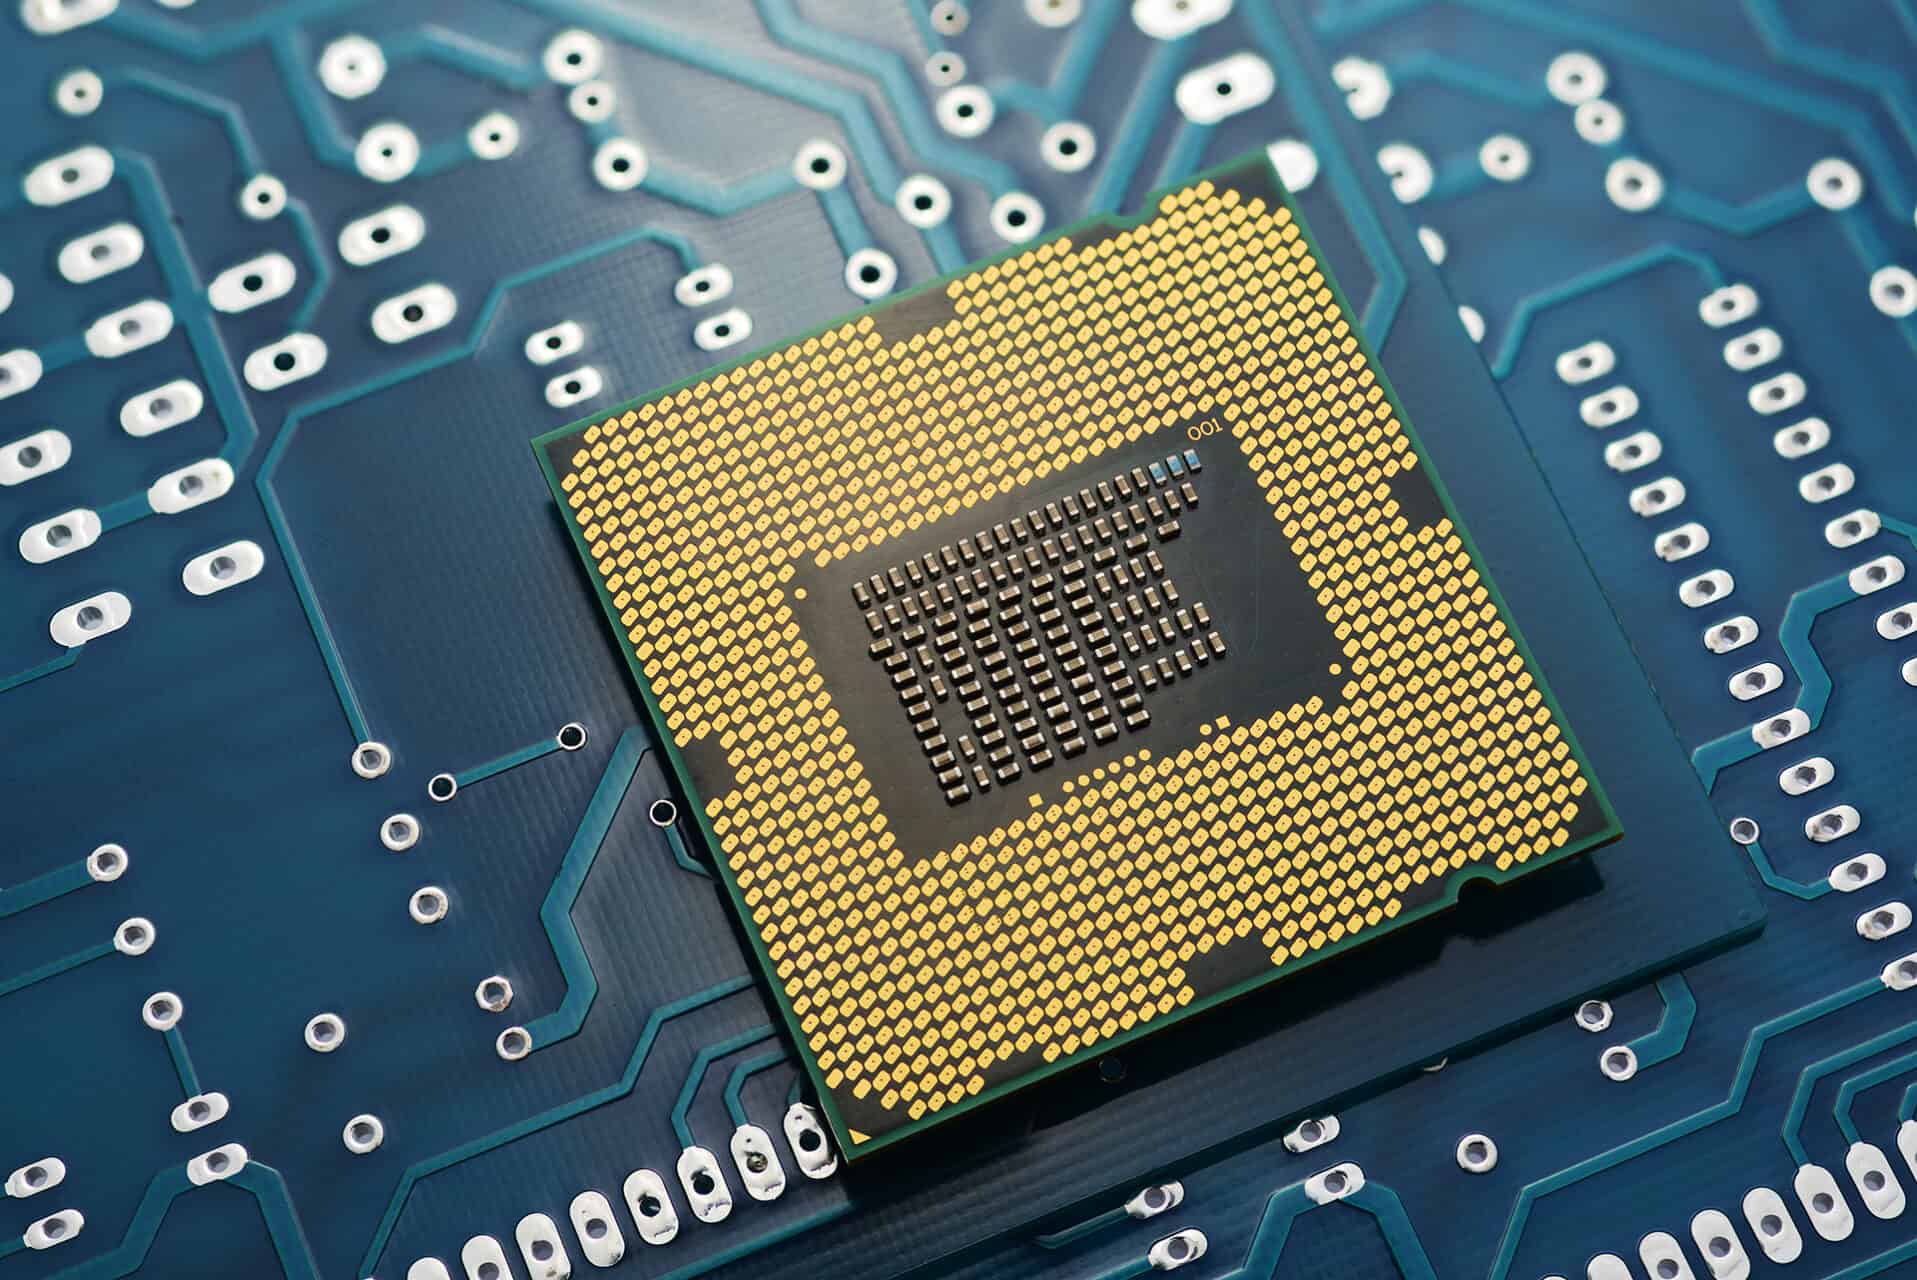 Intel CPU on Printed Circuit Board